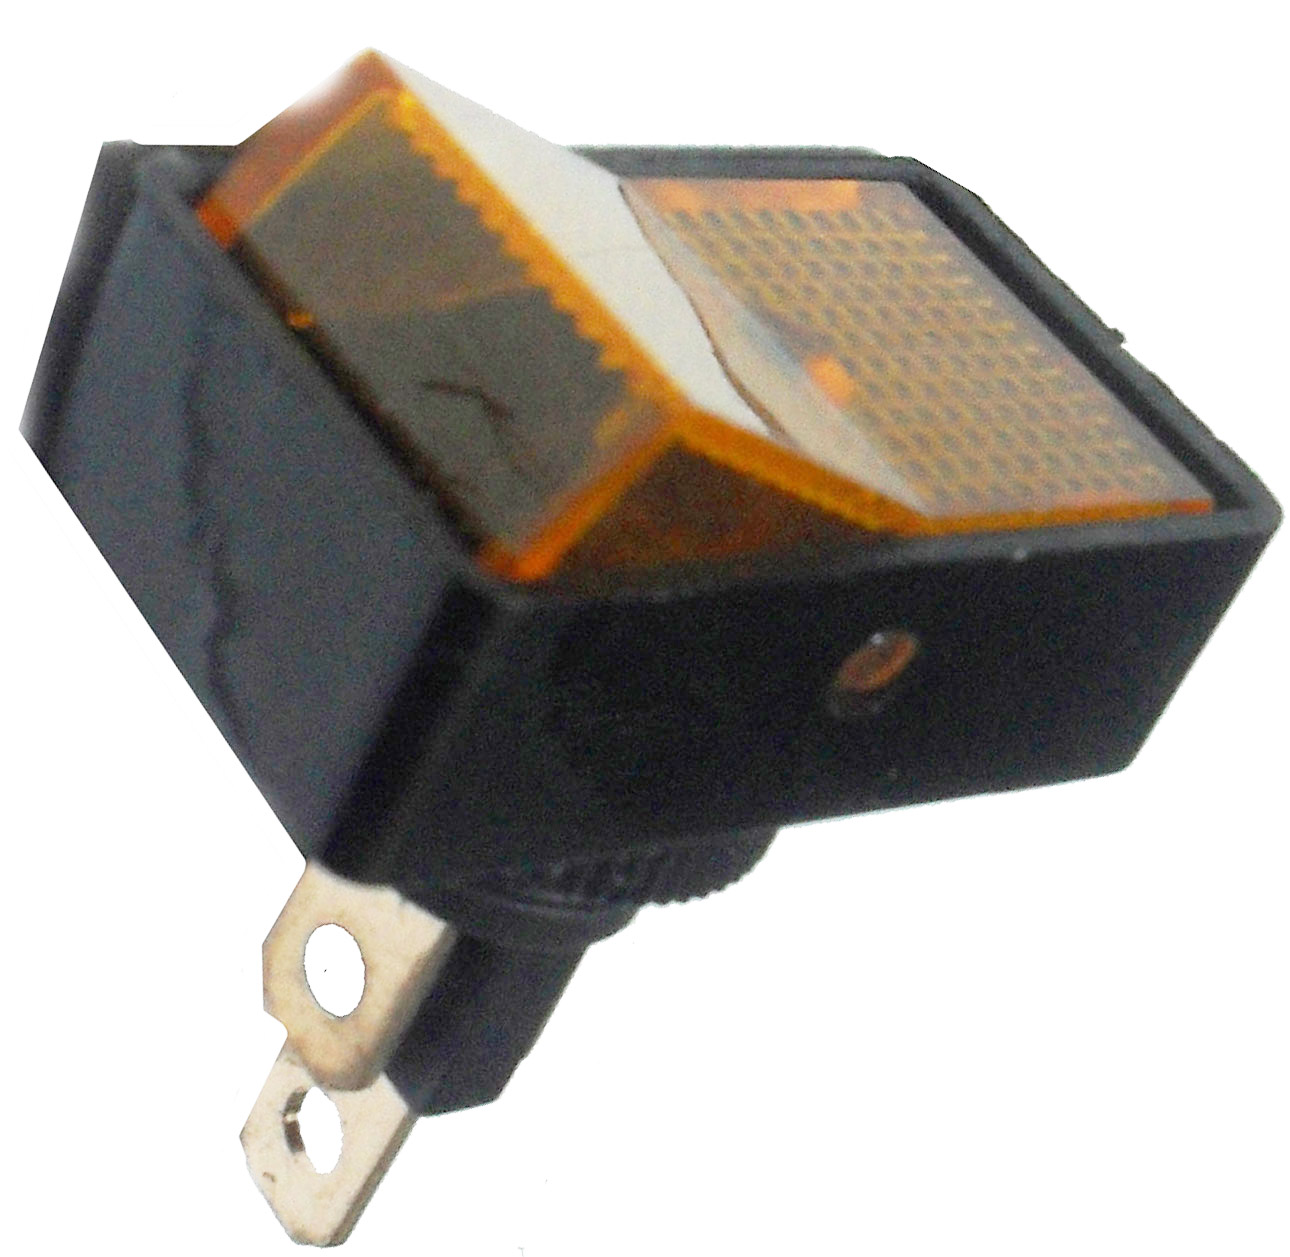 KR30 Выключатель прямоугольный, 2A, On-On, 3 pin, для монтажа на корпус в КРУГЛОЕ отверстие 12 мм, без подсветки 